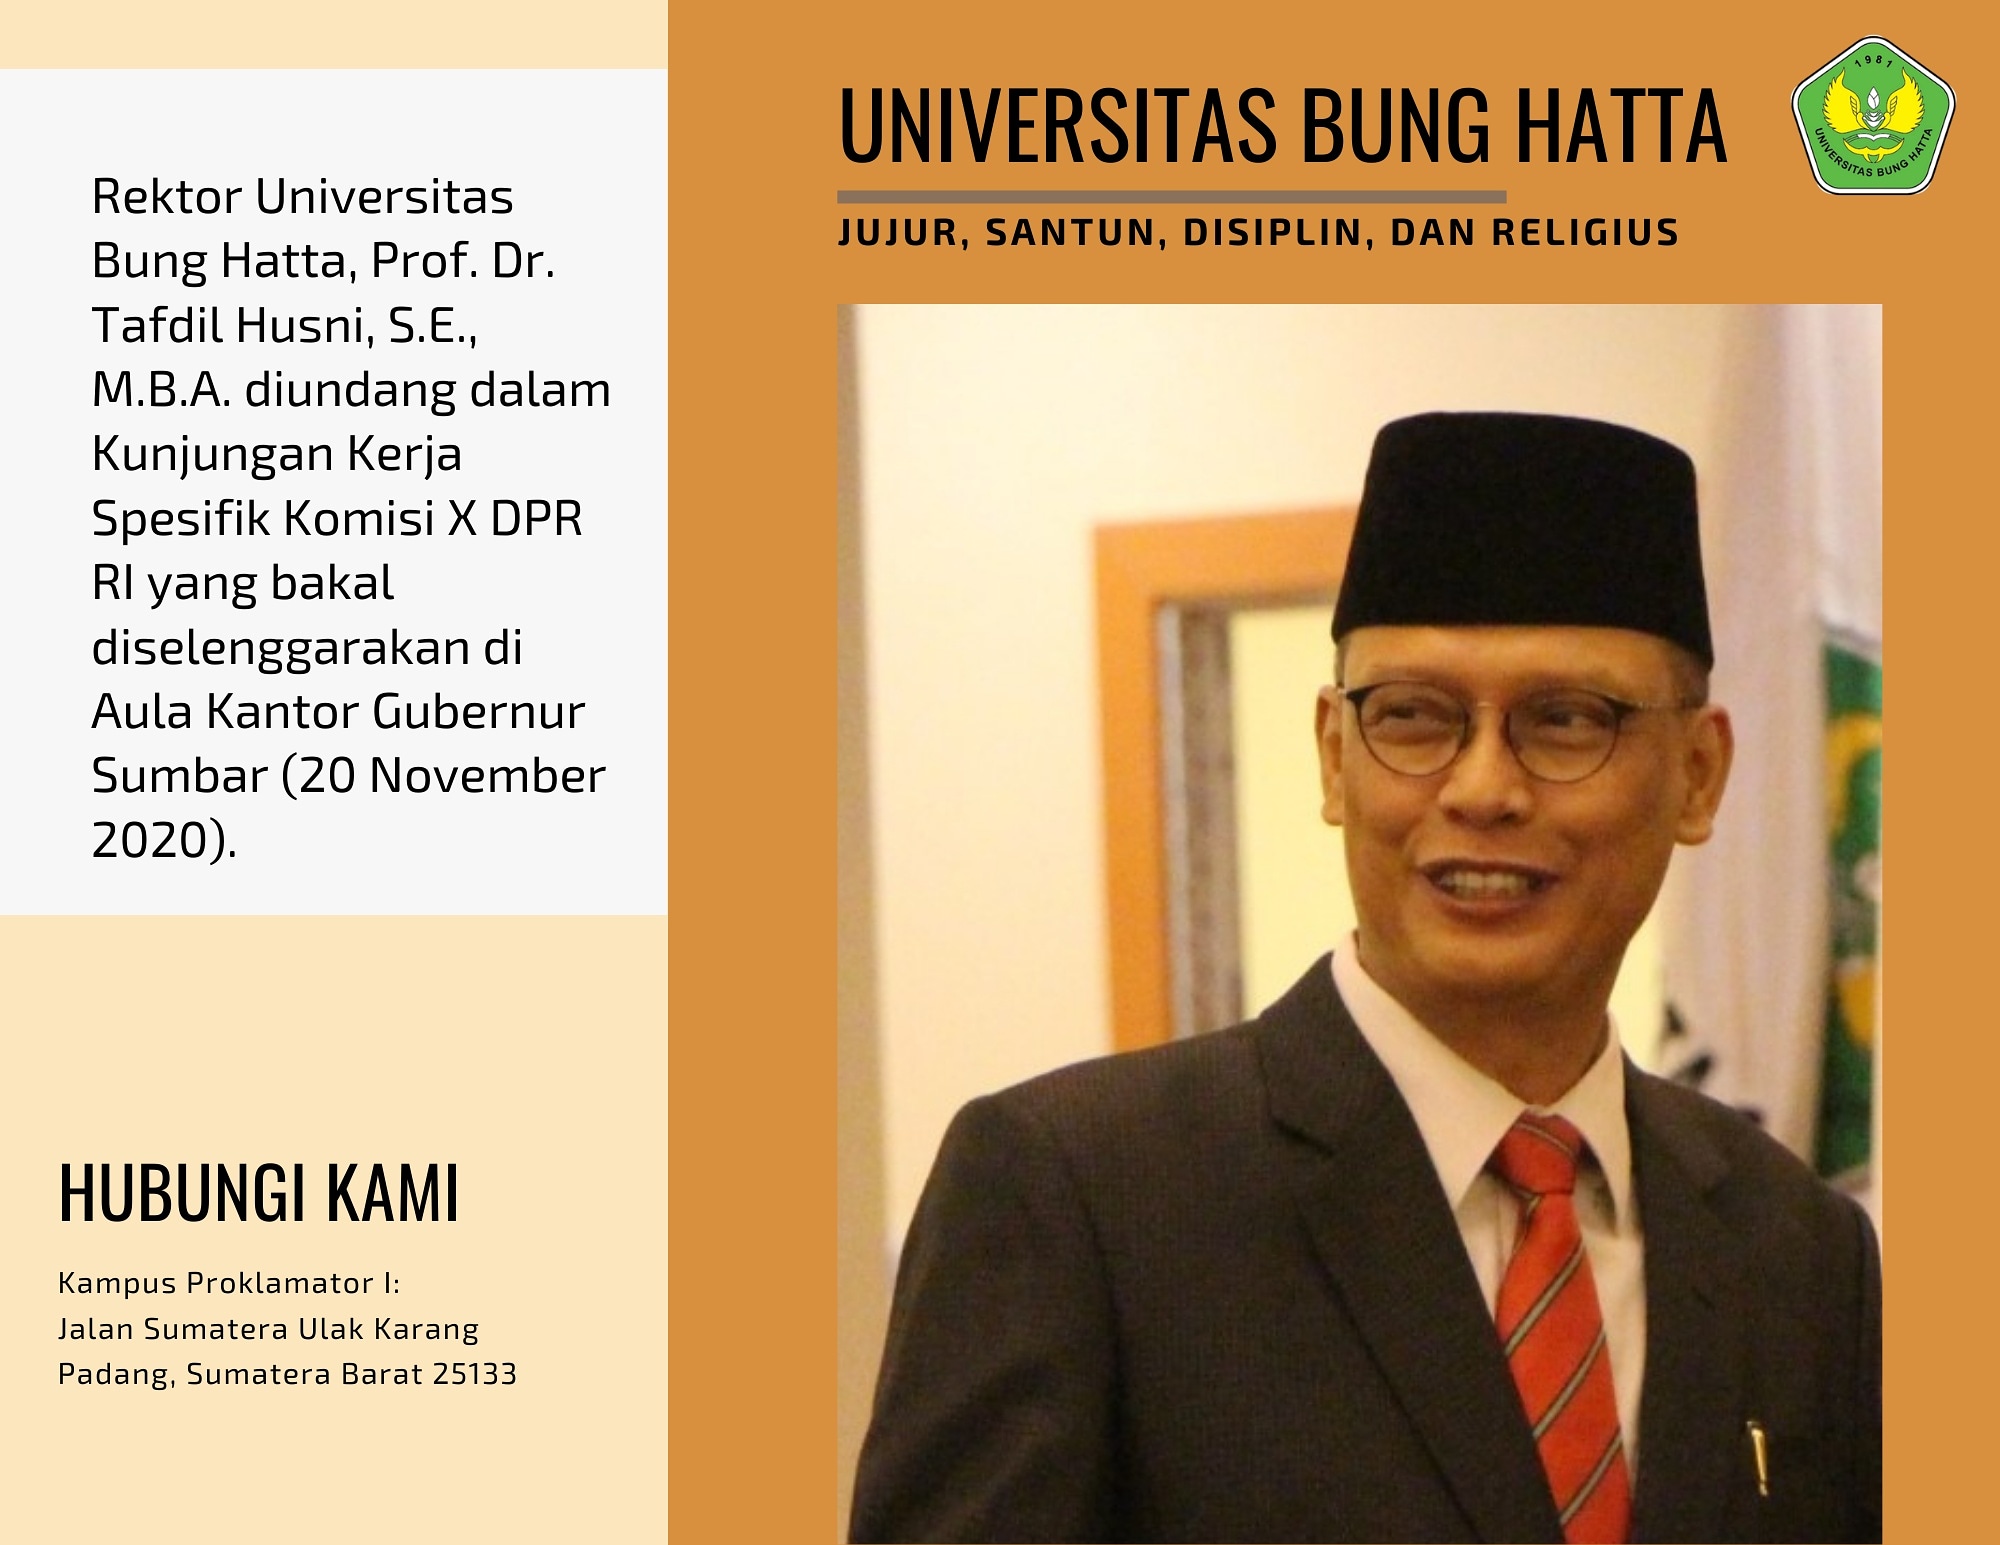 Rektor Universitas Bung Hatta Diundang dalam Kunjungan Kerja Spesifik Komisi X DPR RI 